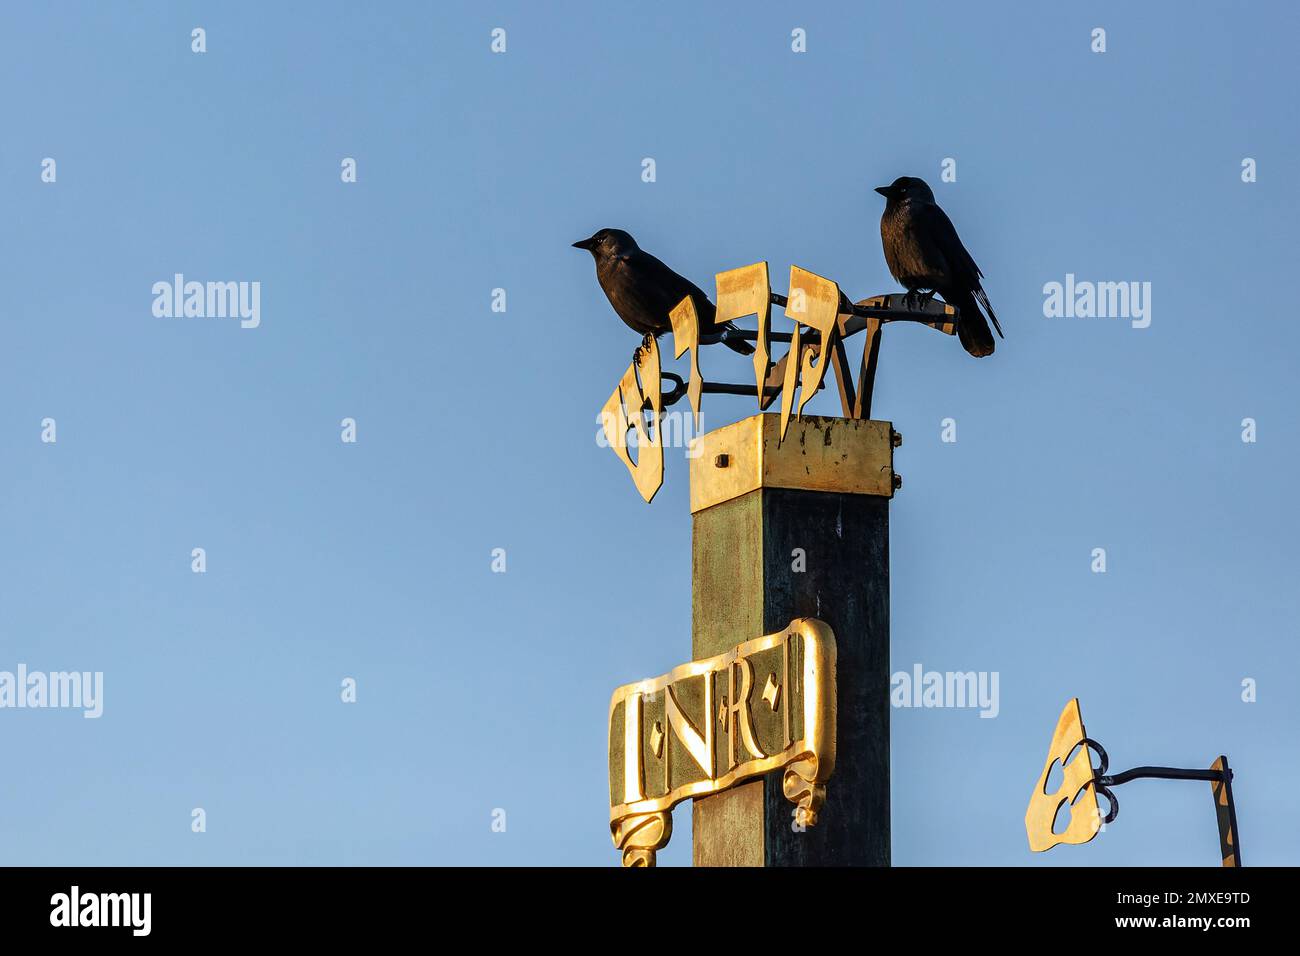 Zwei eurasische Dummköpfe, die auf einem goldenen Schild mit jüdischen Buchstaben, INRI, in Prag auf einer Karlsbrücke stehen. Sonniger Tag mit blauem Himmel. Stockfoto